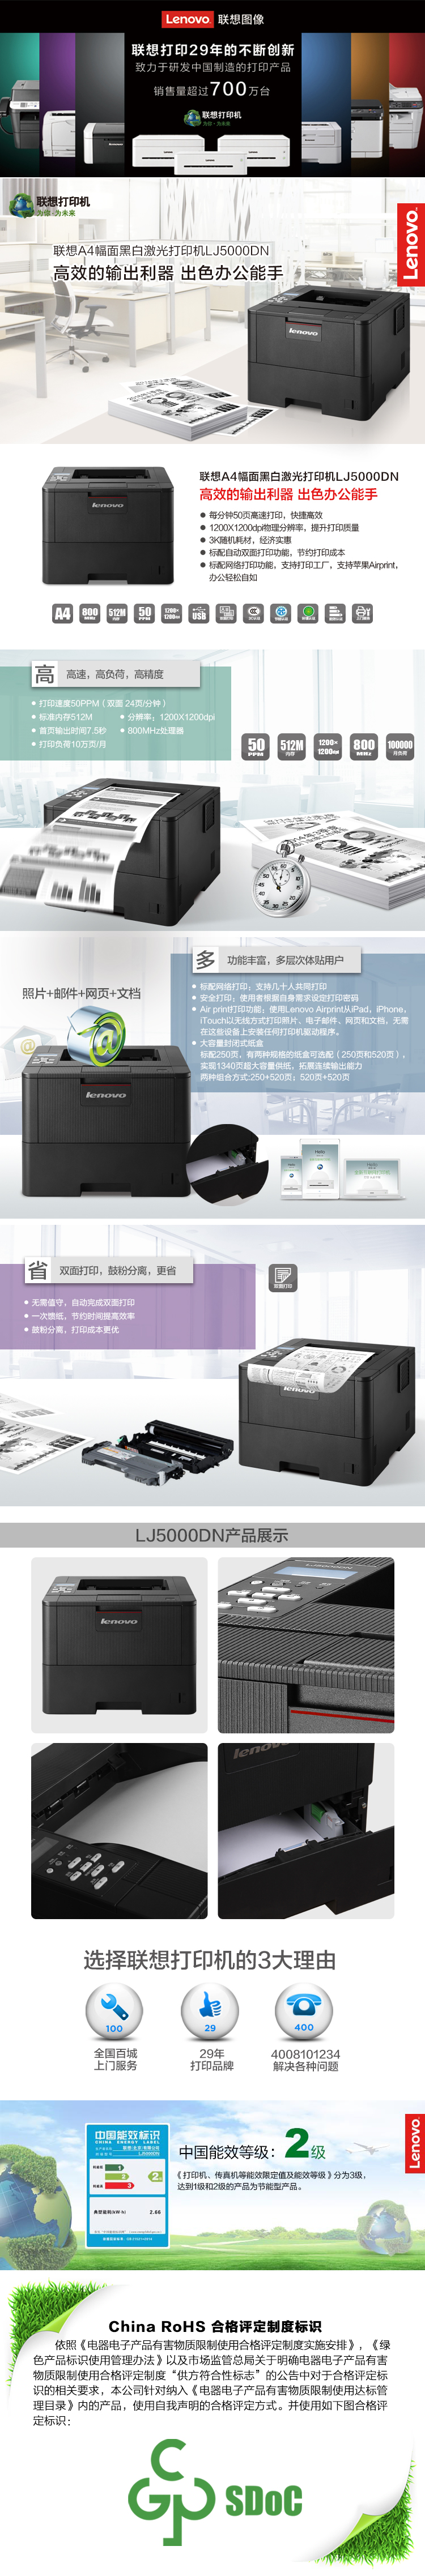 联想激光打印机LJ5000DN